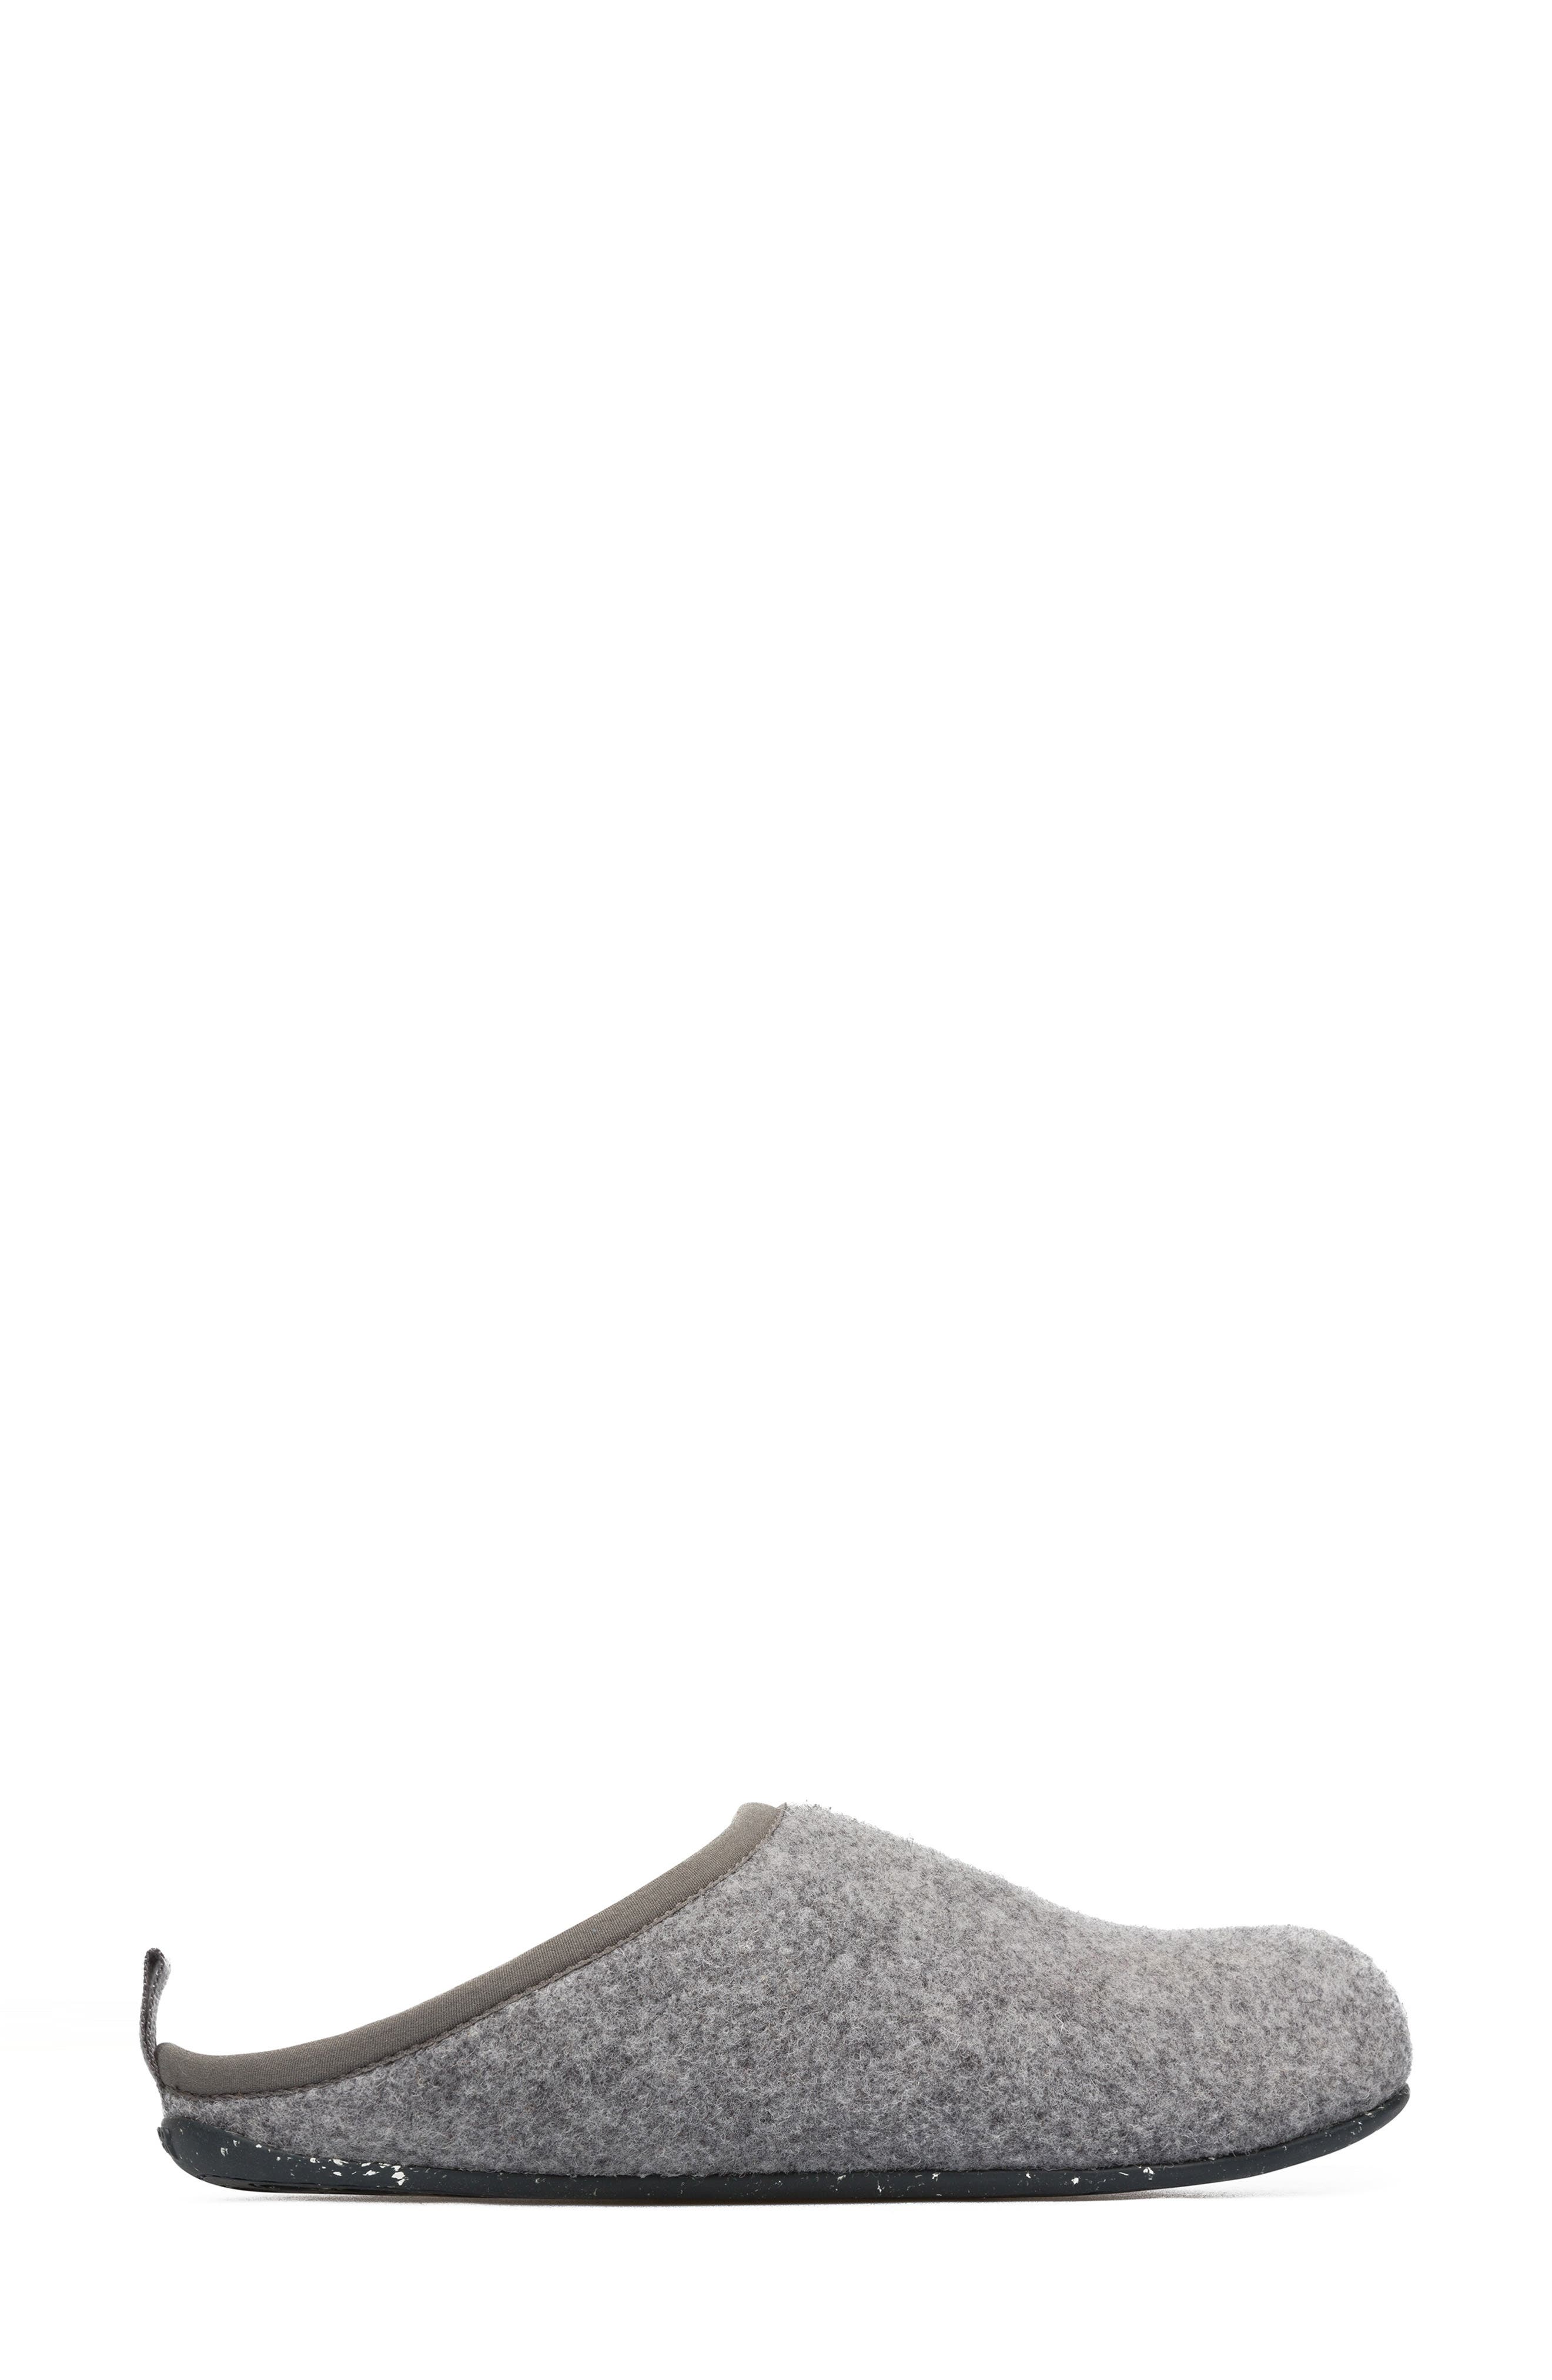 Womens Camper 20889-061 Wabi Tweed Grey Slide on Slippers Size 